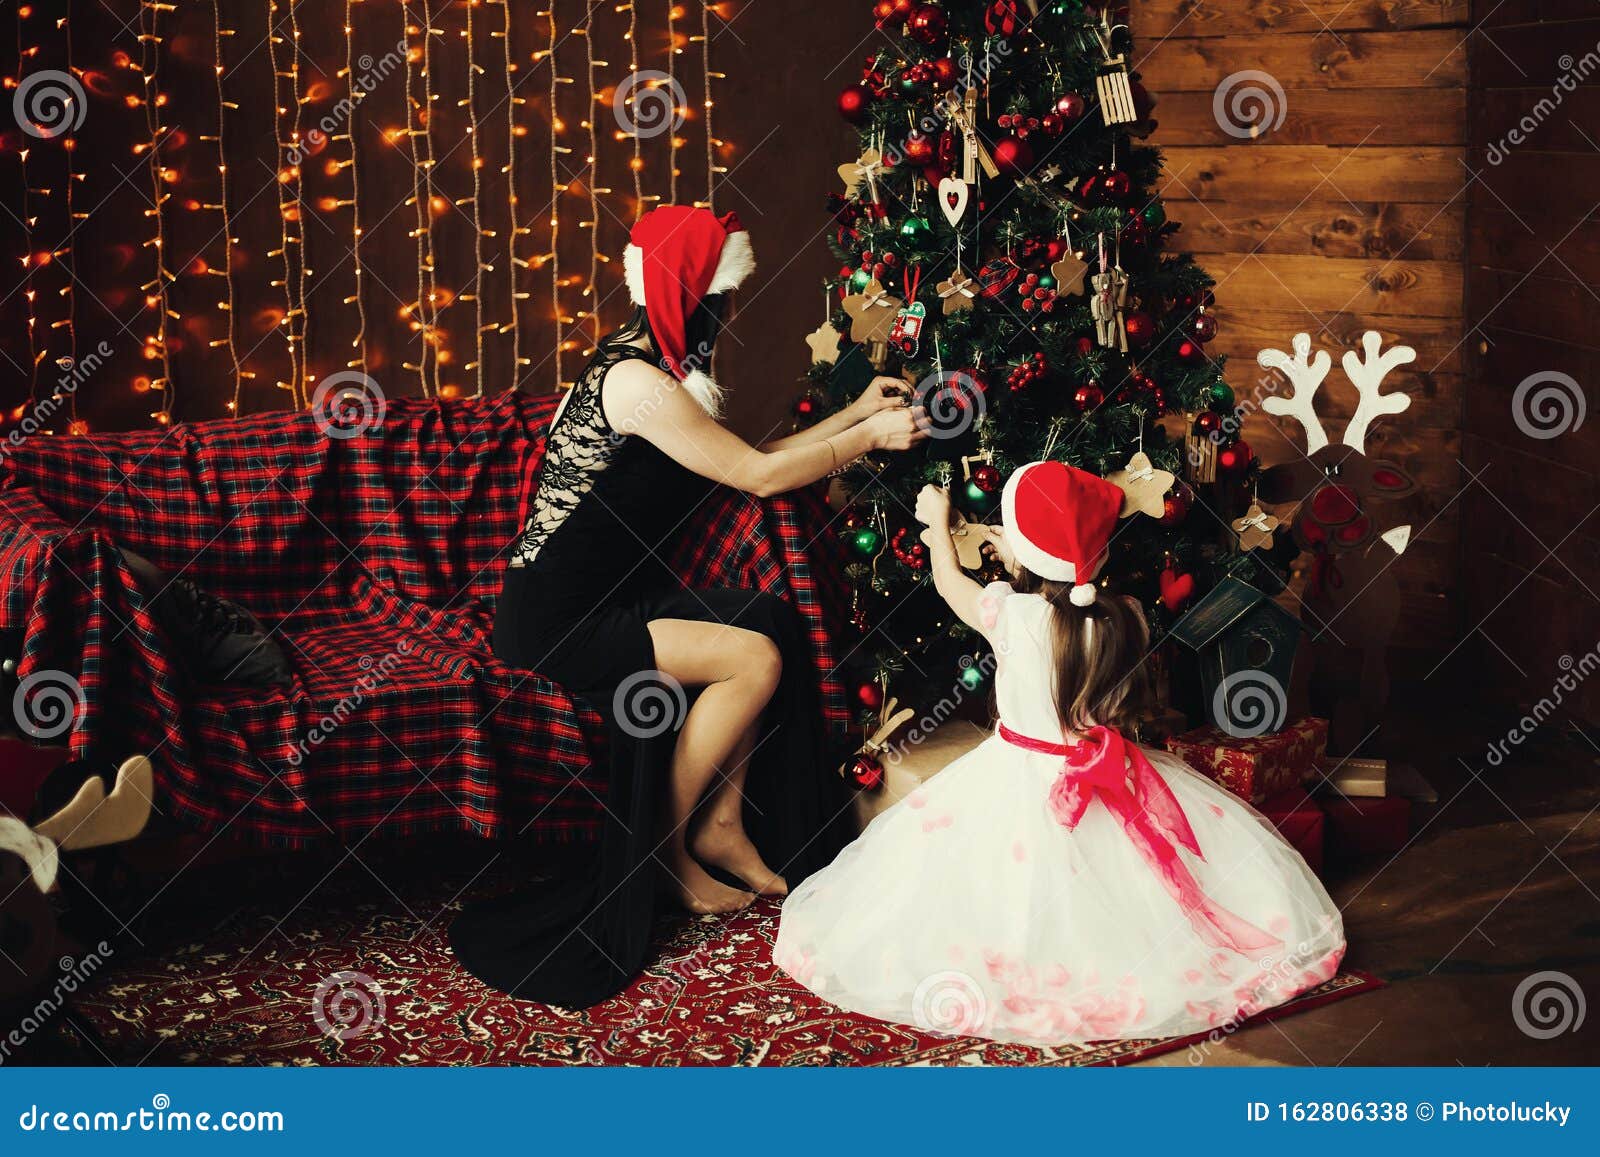 E Hija Decorando árbol De Navidad Para Las Vacaciones De Año Nuevo Foto de archivo - Imagen de relaciones, casa: 162806338